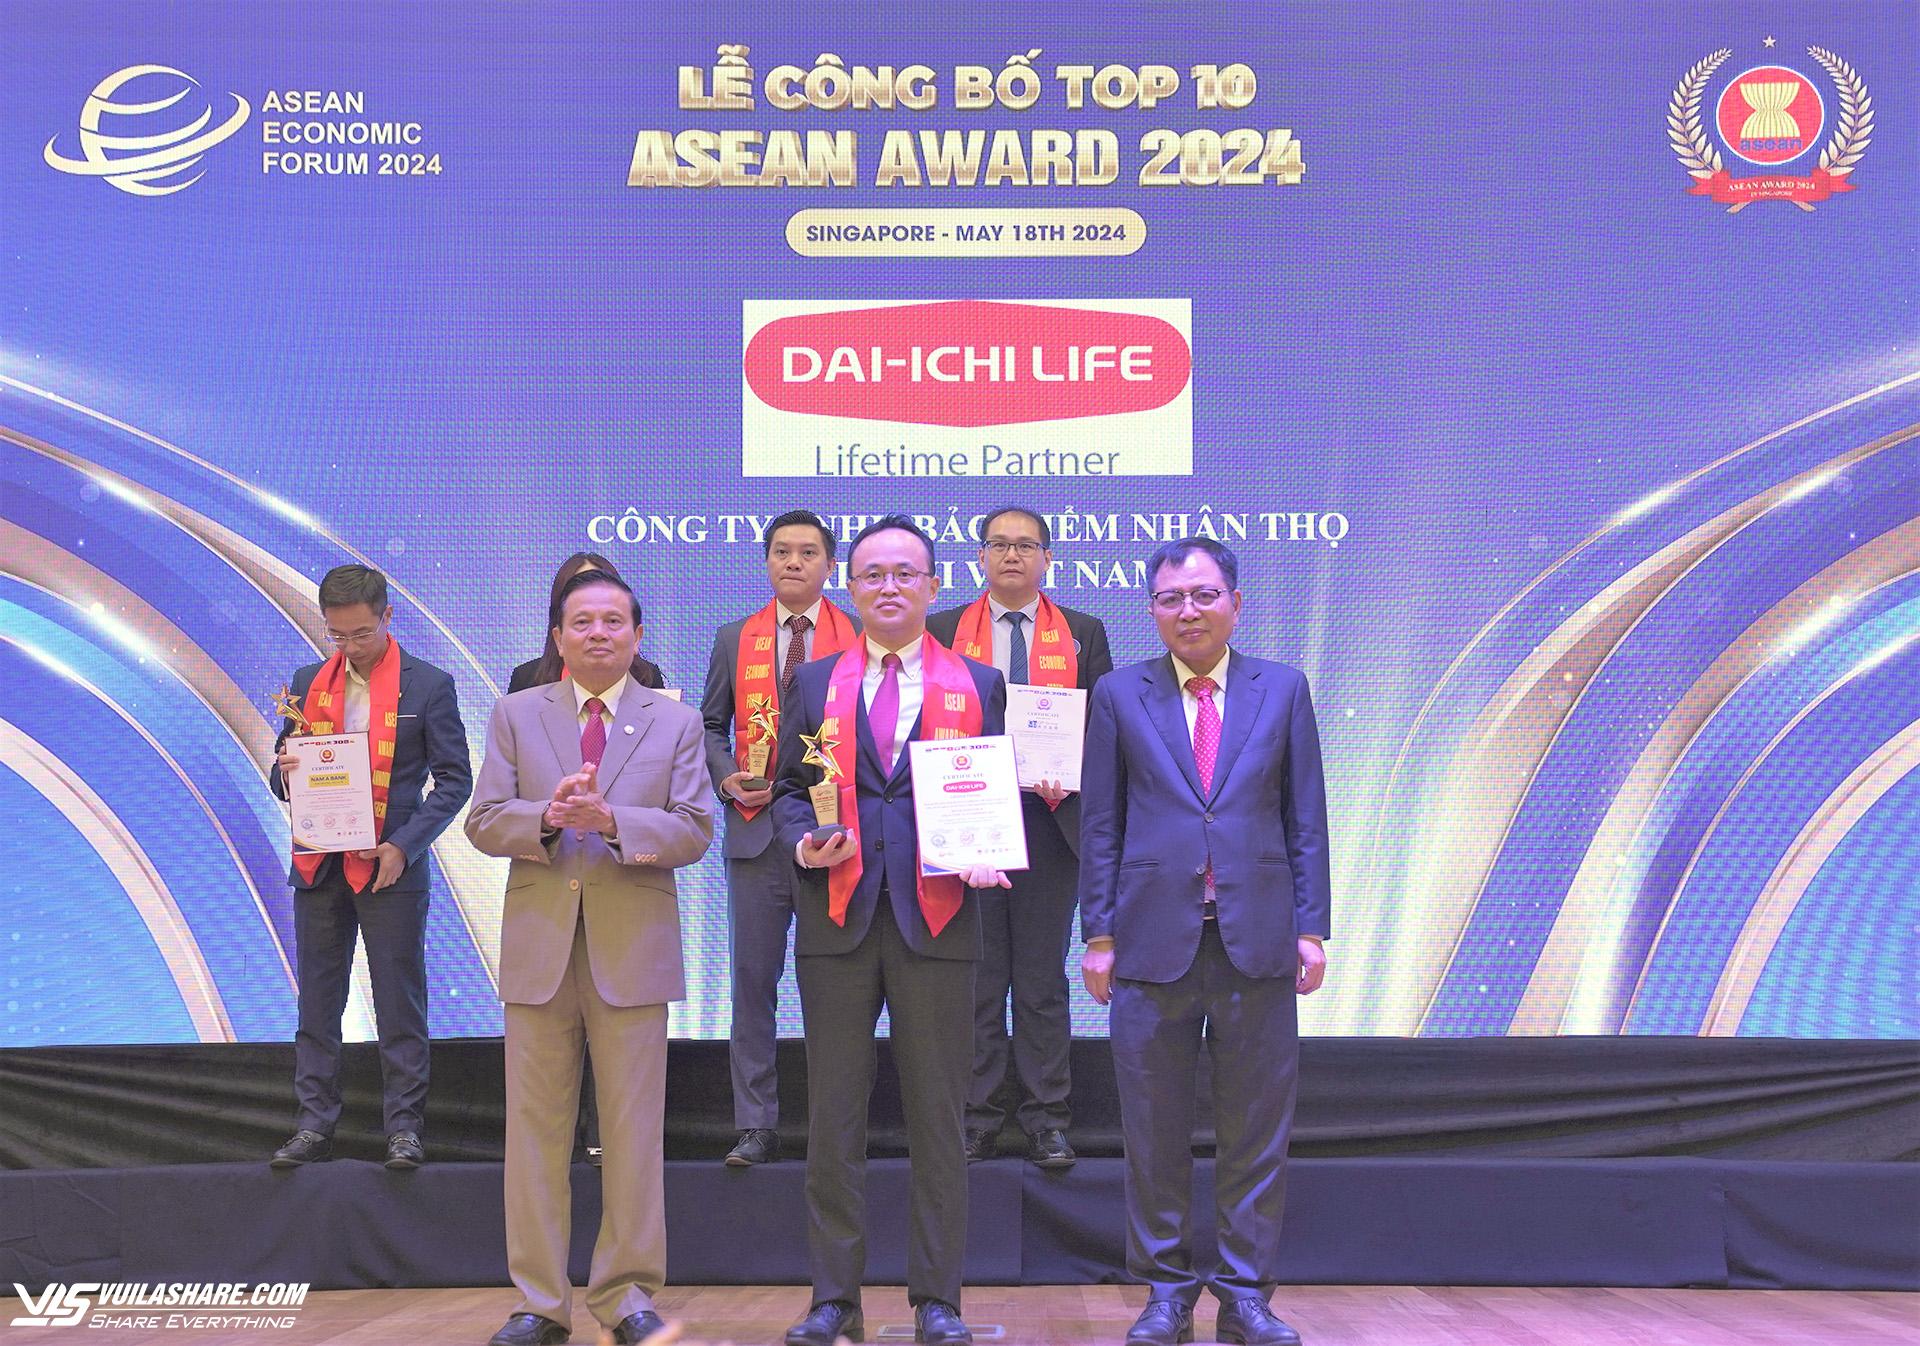 Ông Yoshihito Takahama - Phó tổng giám đốc Điều hành kiêm Phó Tổng Giám đốc Hành chính Tổng hợp Dai-ichi Life Việt Nam, nhận danh hiệu "Top 10 Doanh nghiệp Tiêu biểu ASEAN 2024" được tổ chức tại Singapore vào ngày 18.5.2024